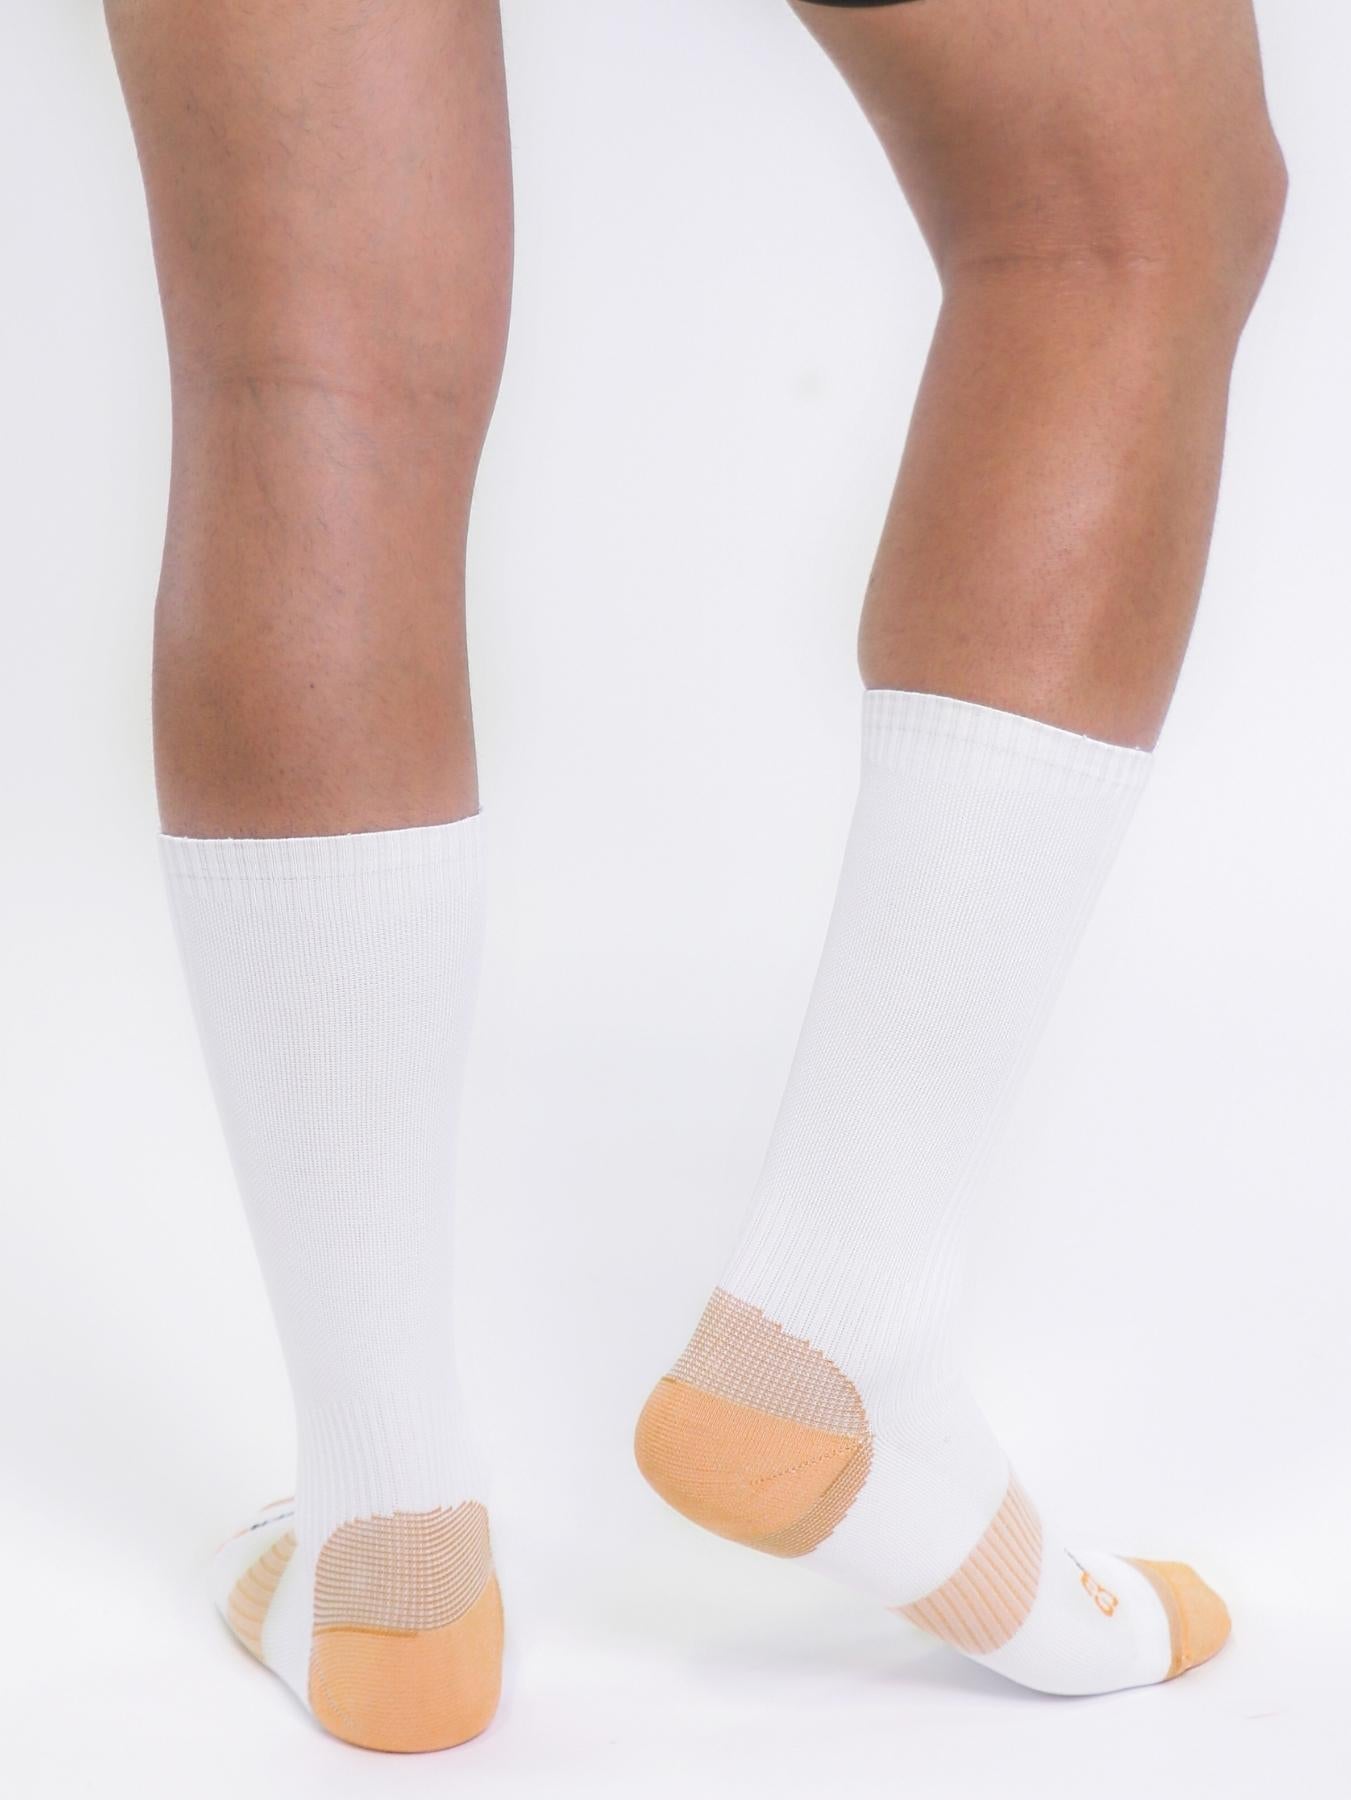 Copper Compression Mid Calf Socks (White) - Mens